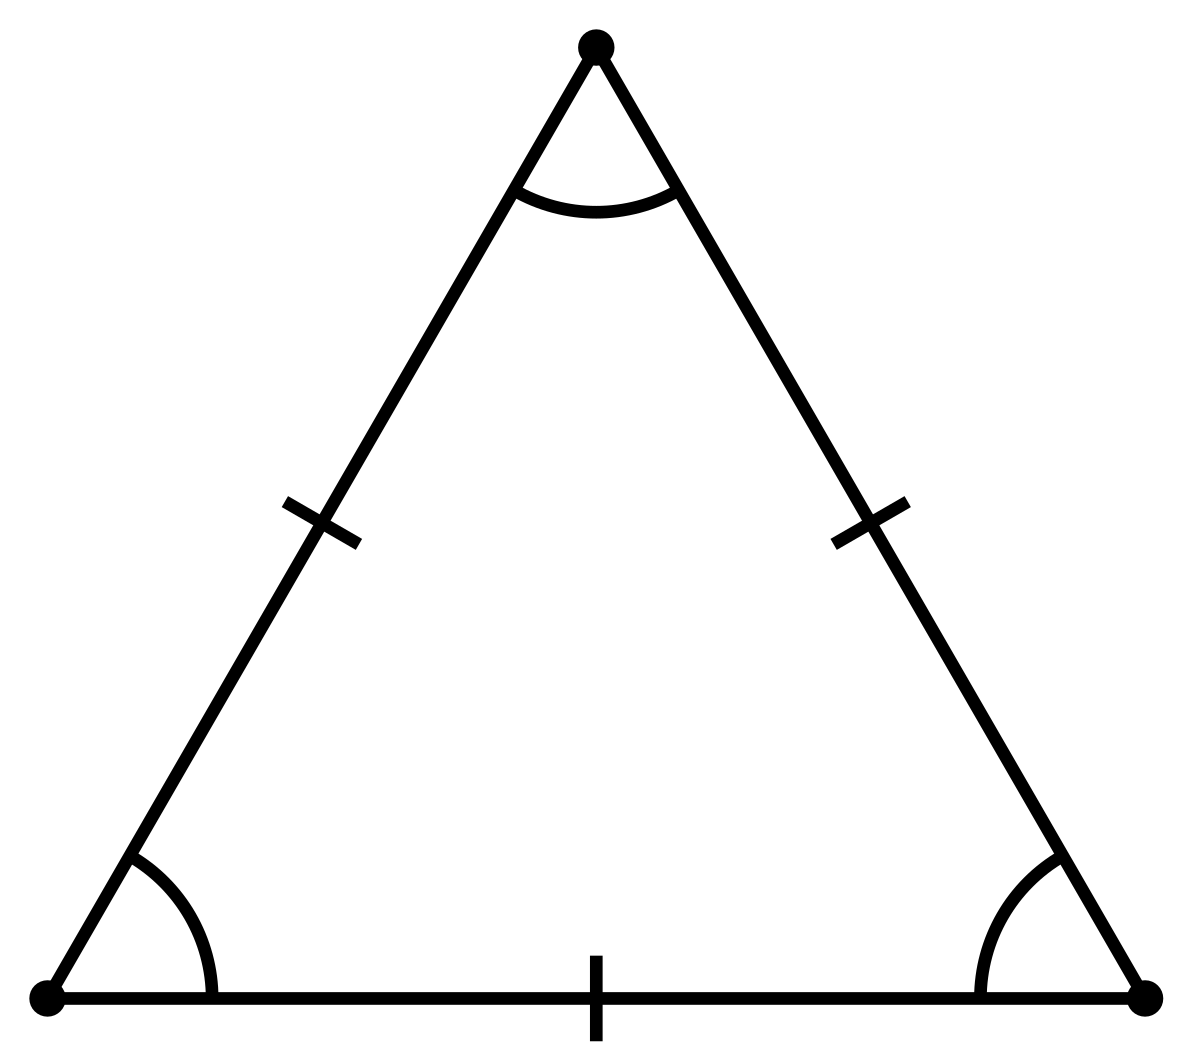 равносторонний треугольник — Викисловарь